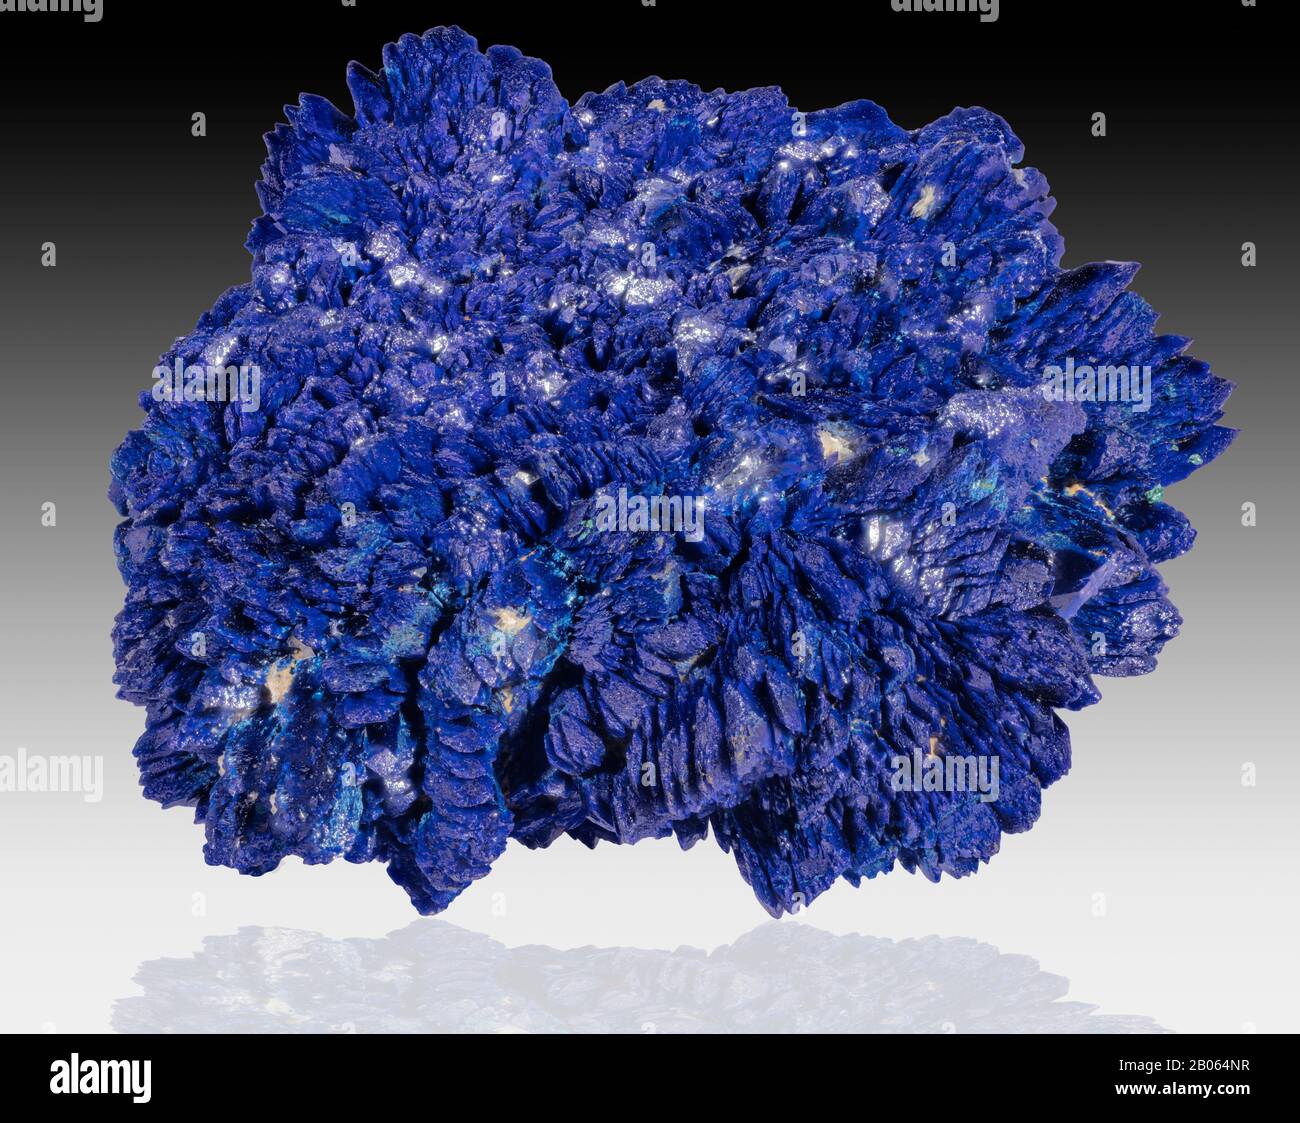 Azurita es una piedra suave, llamada así por su profundo color azul celeste. Es un mineral de carbonato de cobre que se encuentra en las partes oxidadas superiores del mineral de cobre fo Foto de stock